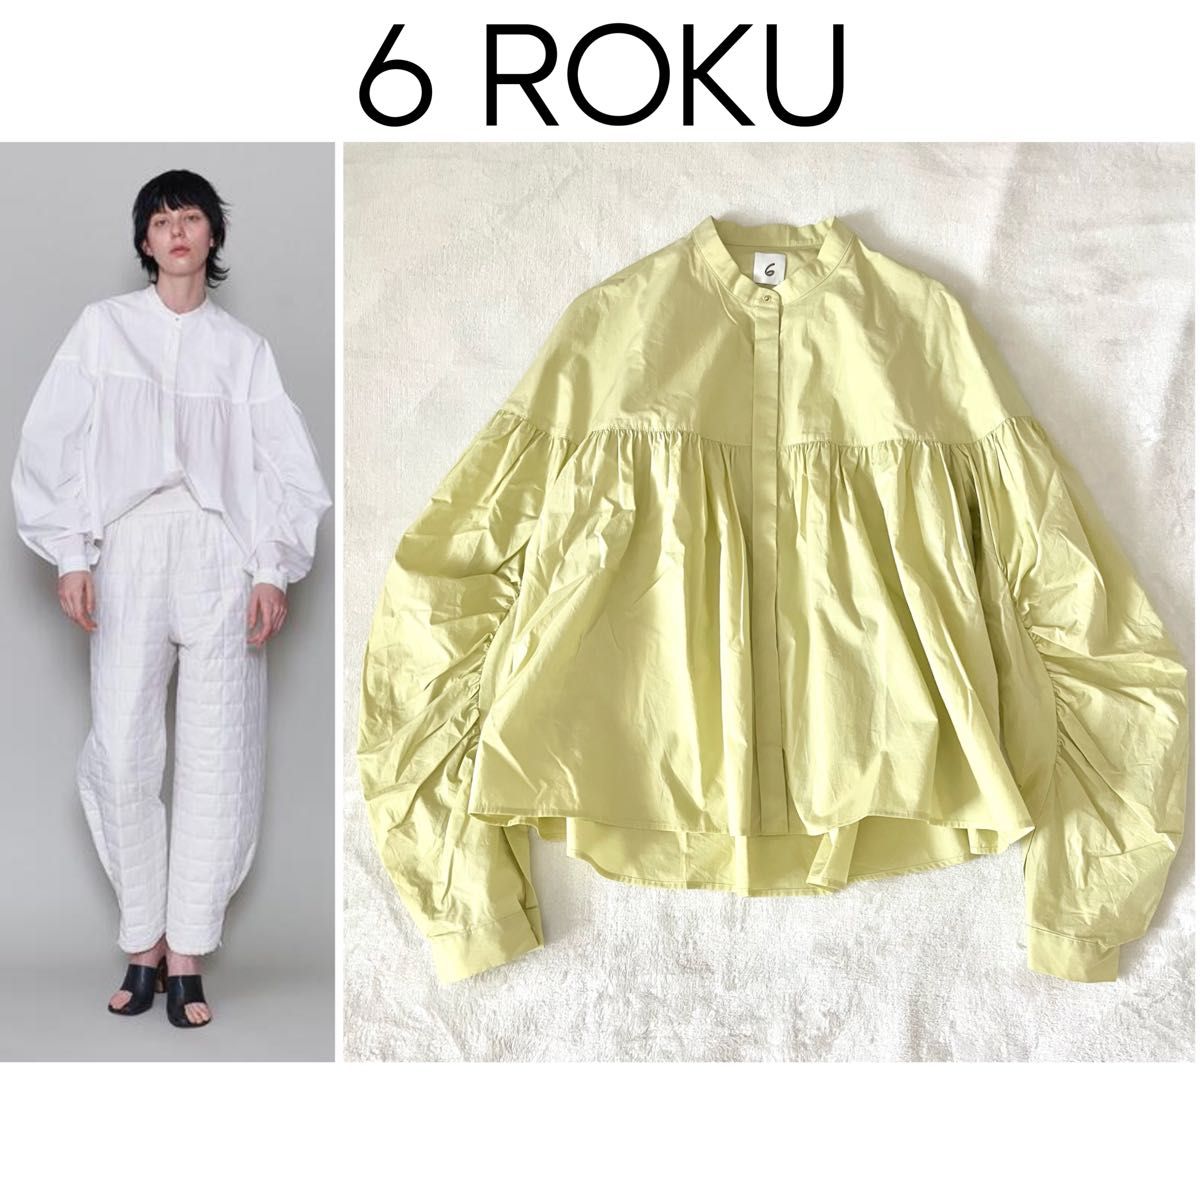 今期 6 ROKU ロク COTTON GATHER SHIRT コットンギャザーシャツ